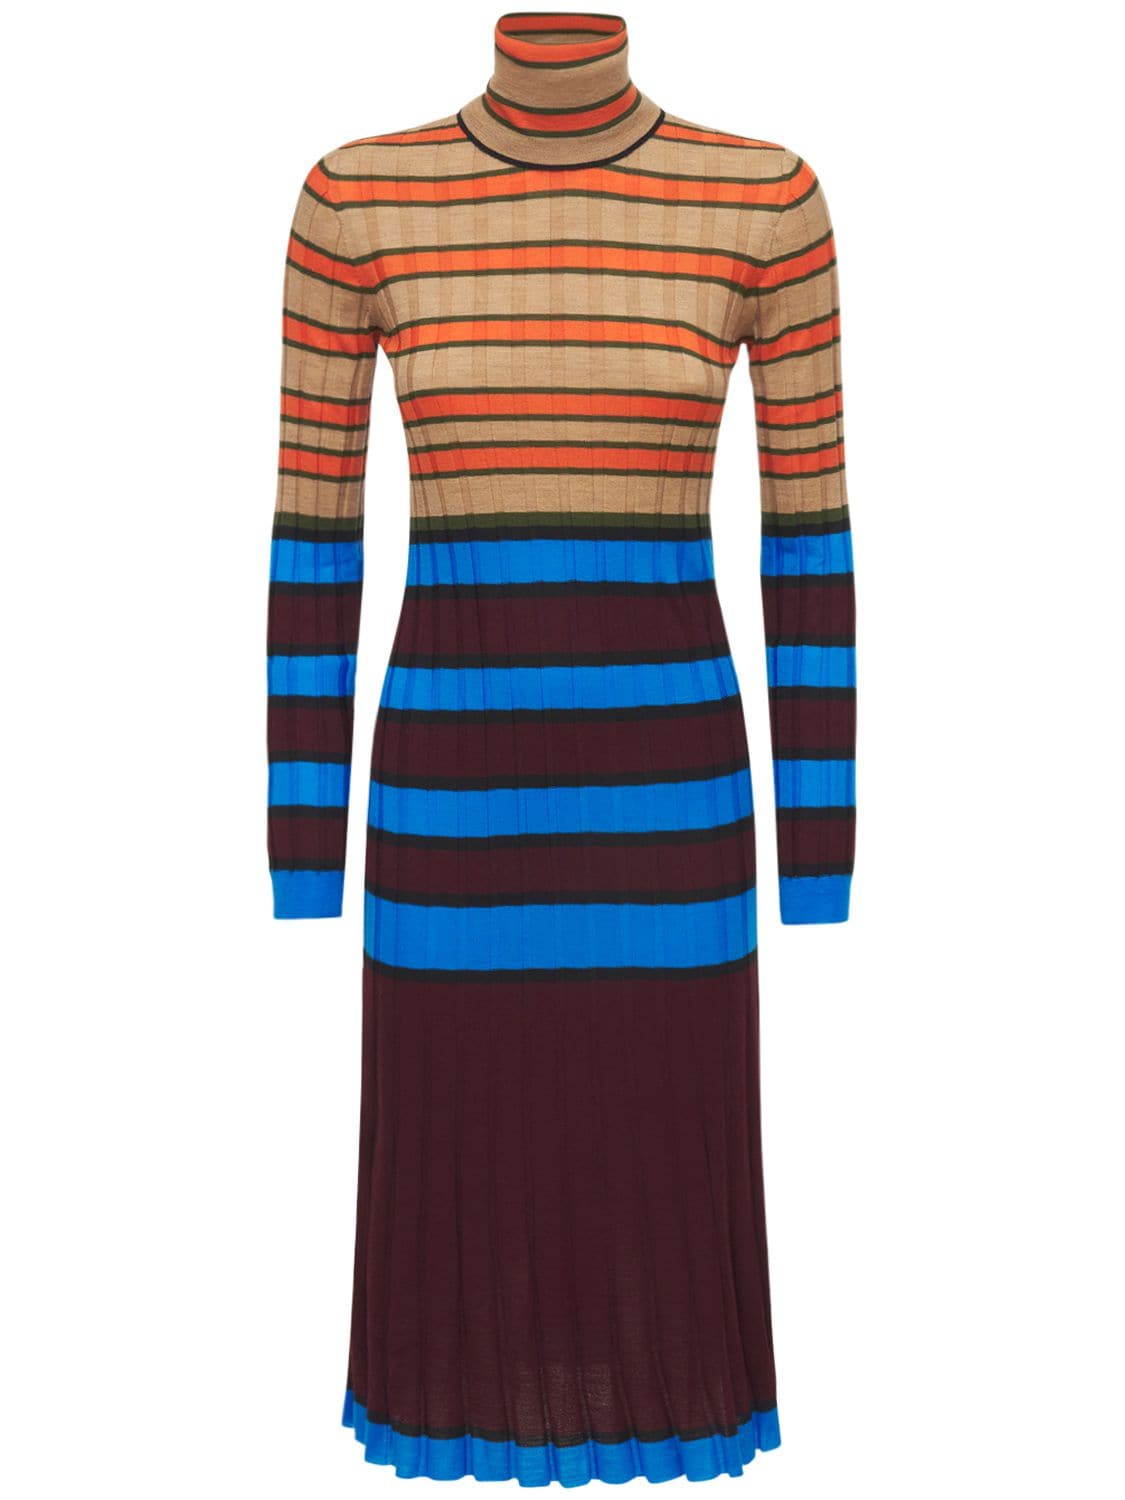 Stripped Wool Knit Turtleneck Dress